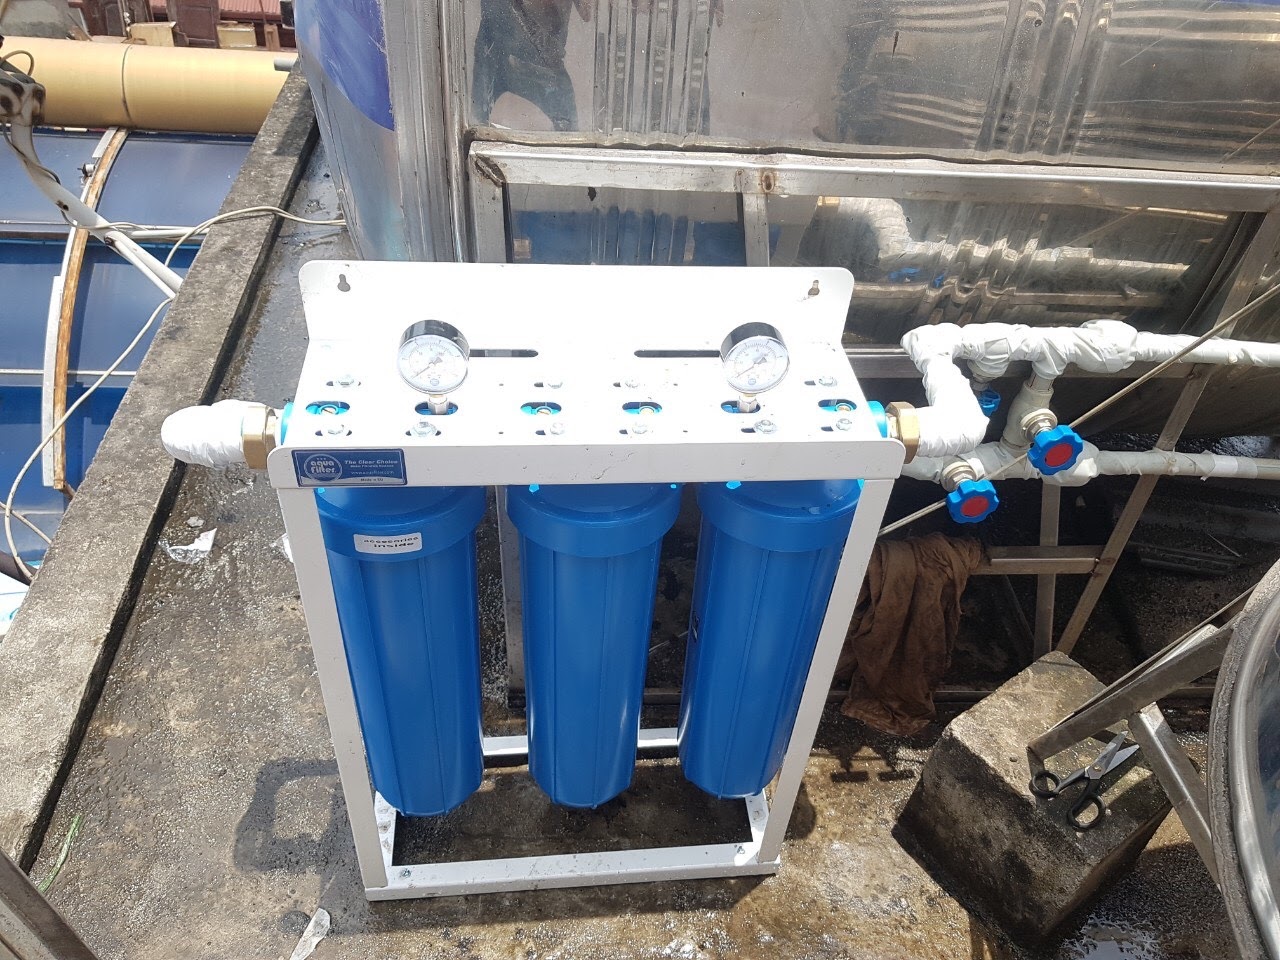 Bộ lọc thô đầu nguồn 3 cấp Big Blue của Aquafilter là máy lọc nước được người dùng ưa chuộng 